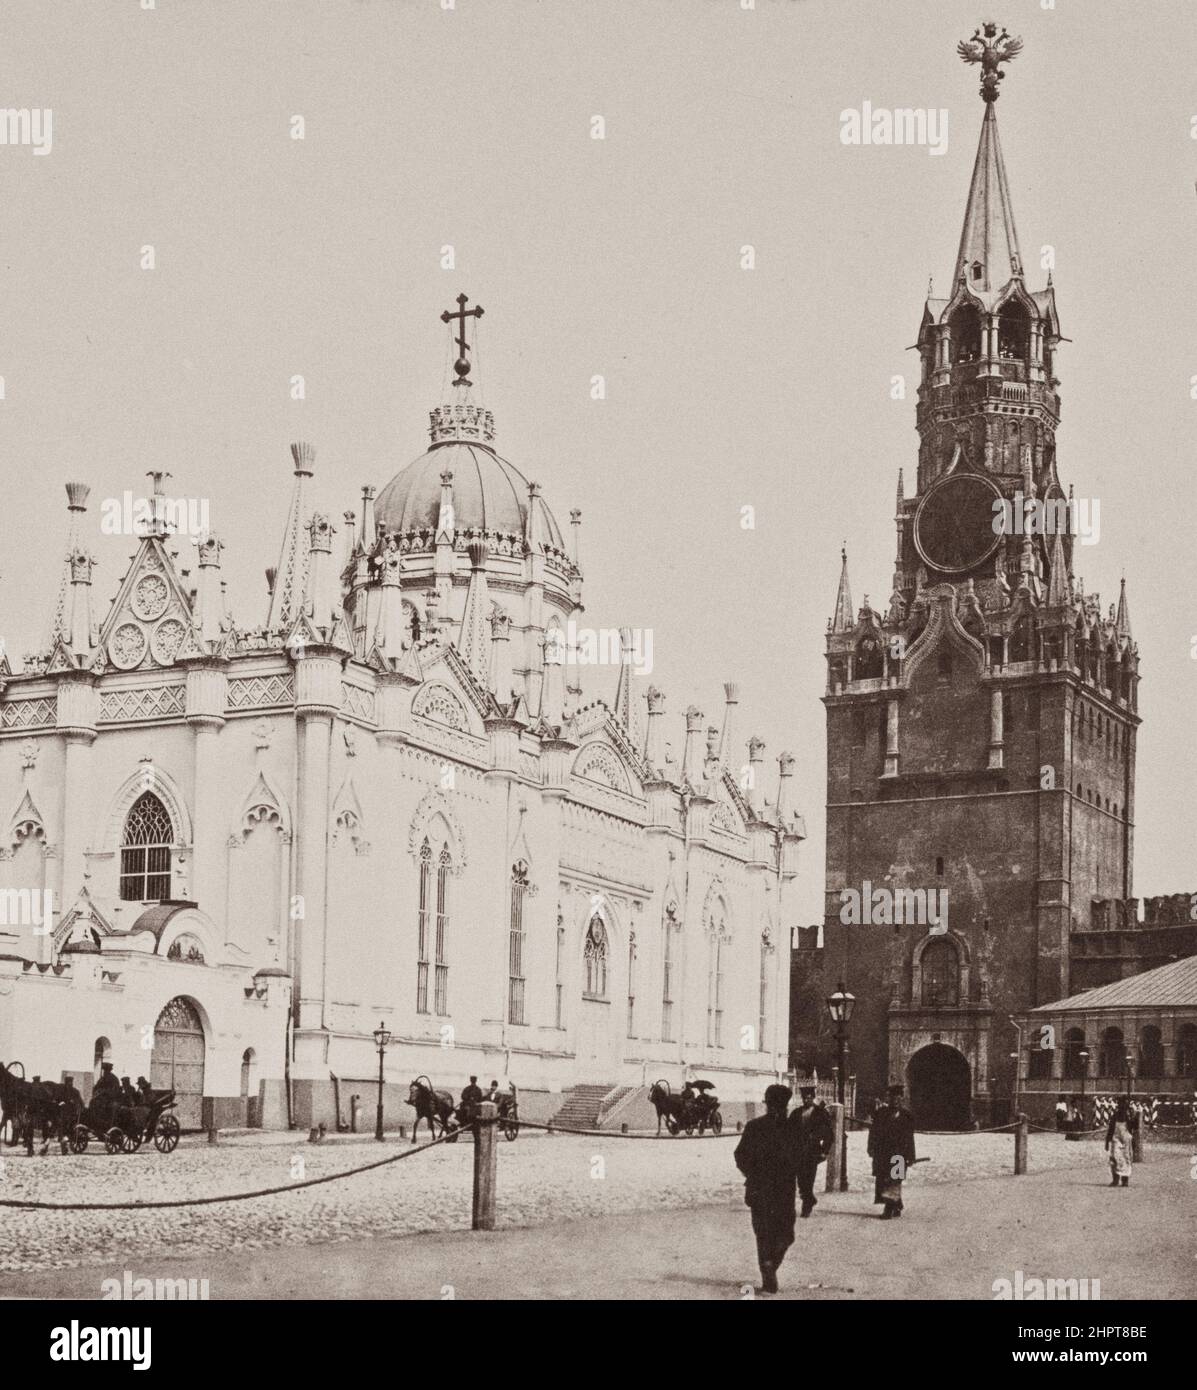 Foto de la época del Convento de la Ascensión (Convento de Starodevichy) y Puerta Spassky. Imperio ruso. 1900s Convento de la Ascensión, conocido como el Convento de Starodevichy Foto de stock